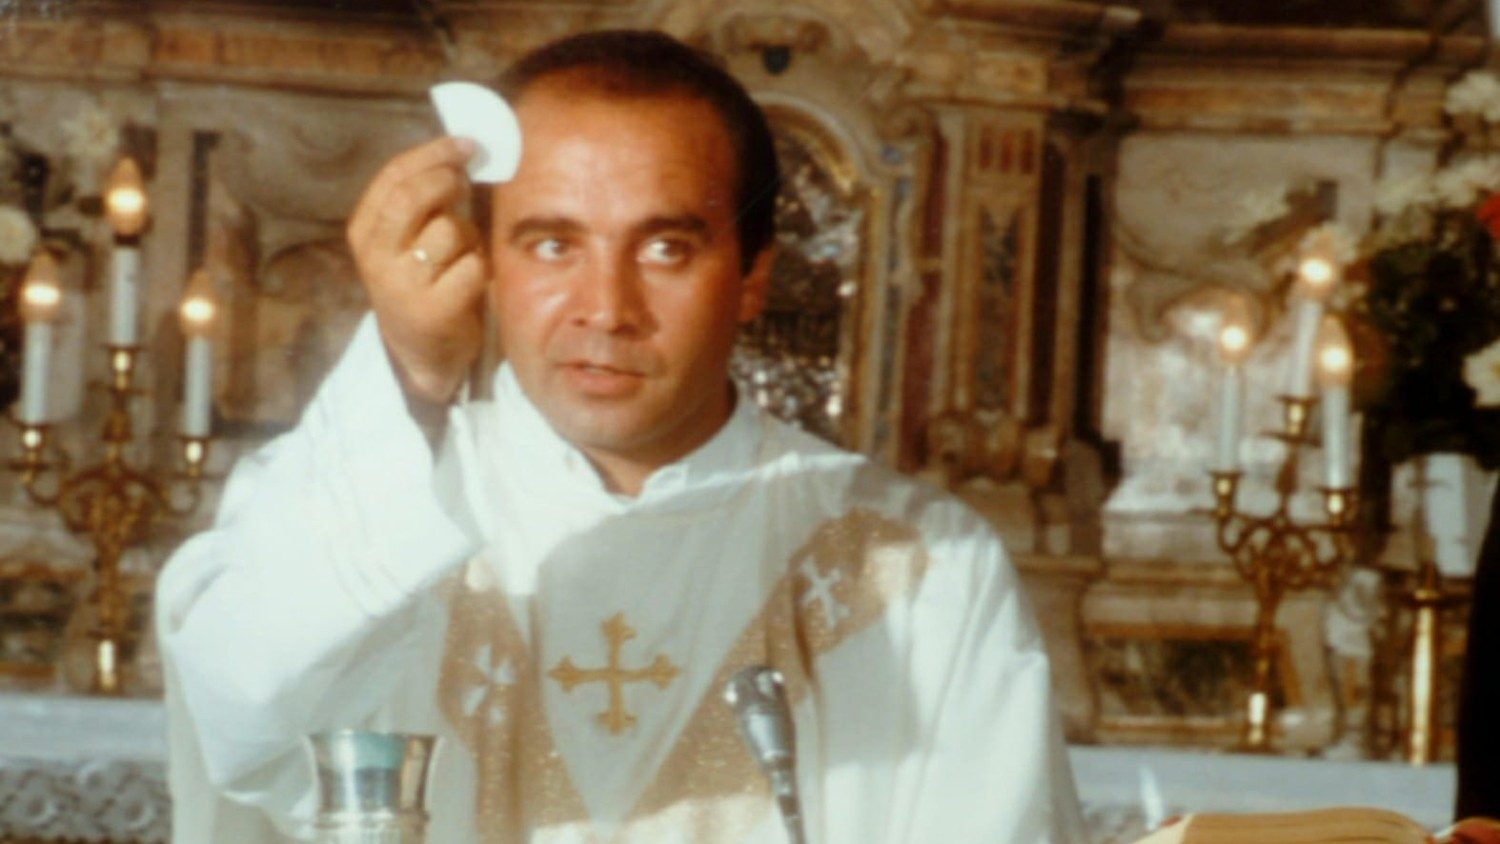 Il ricordo di Don Peppe Diana, martire per la giustizia e la legalità -  Vatican News